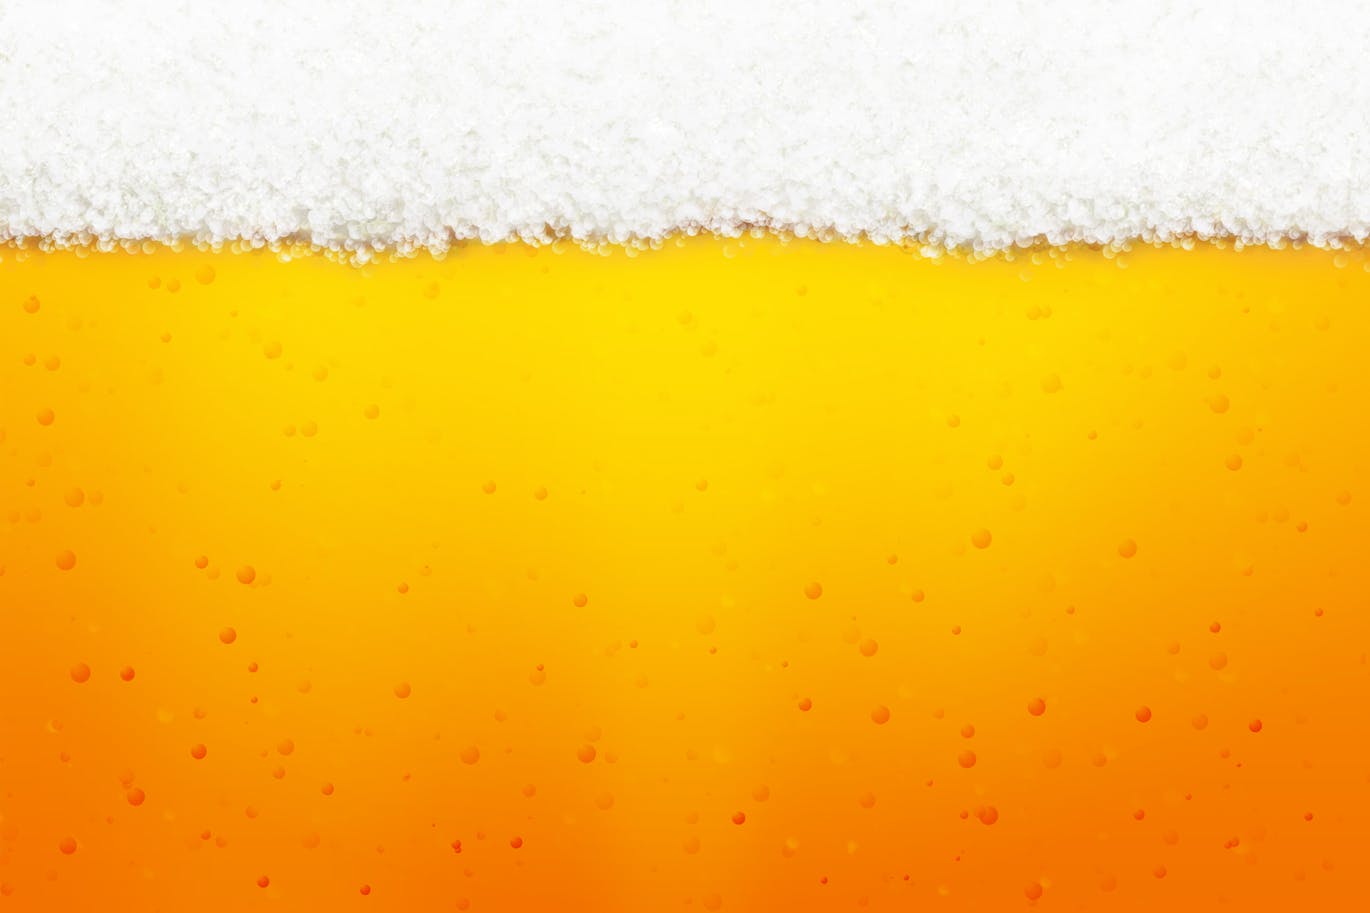 啤酒&啤酒泡沫背景图素材 Beer background插图